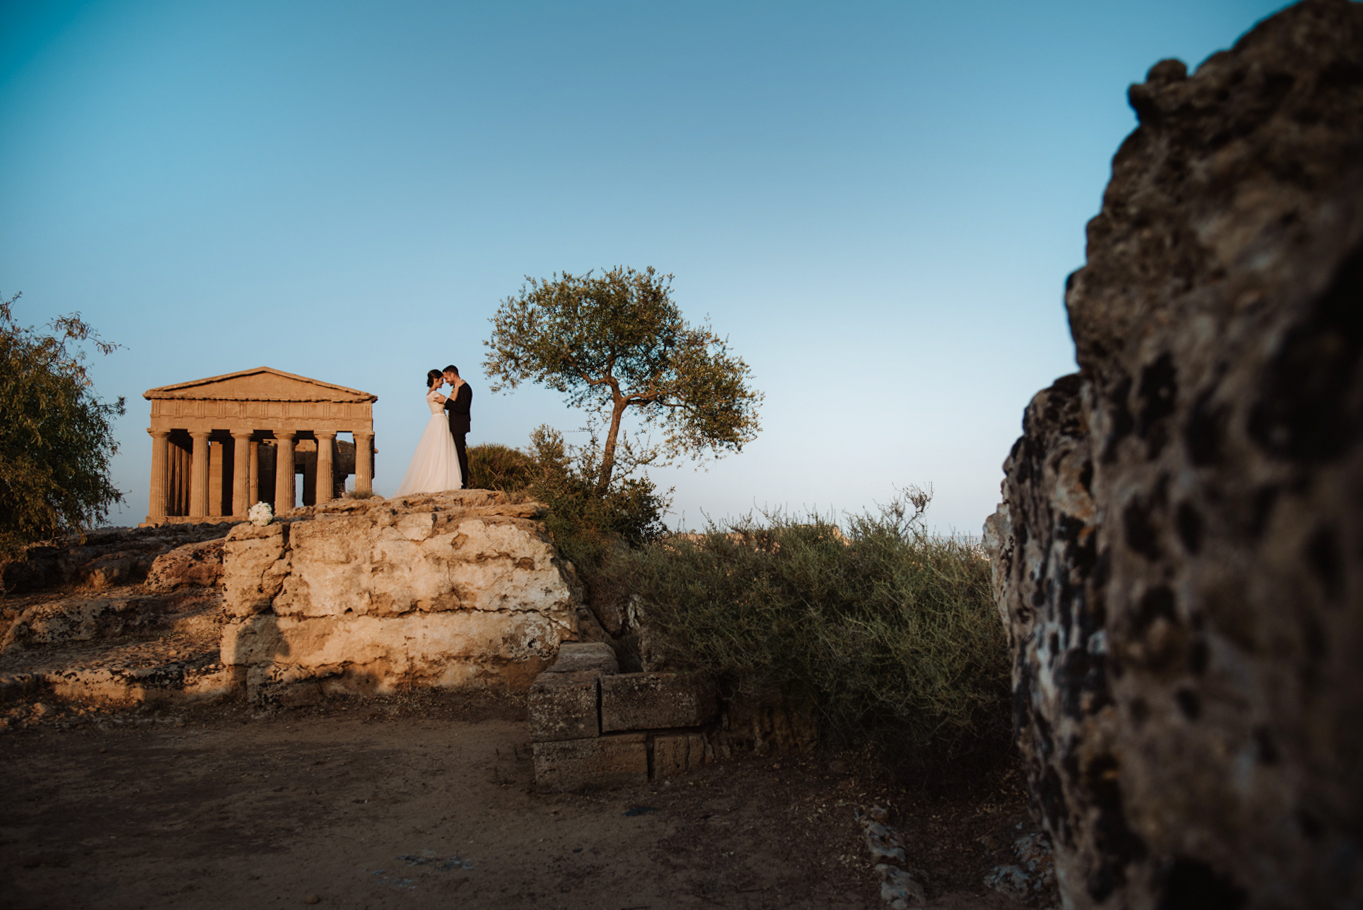 Sposarsi nella Valle dei Templi: come fare e quali autorizzazioni da chiedere